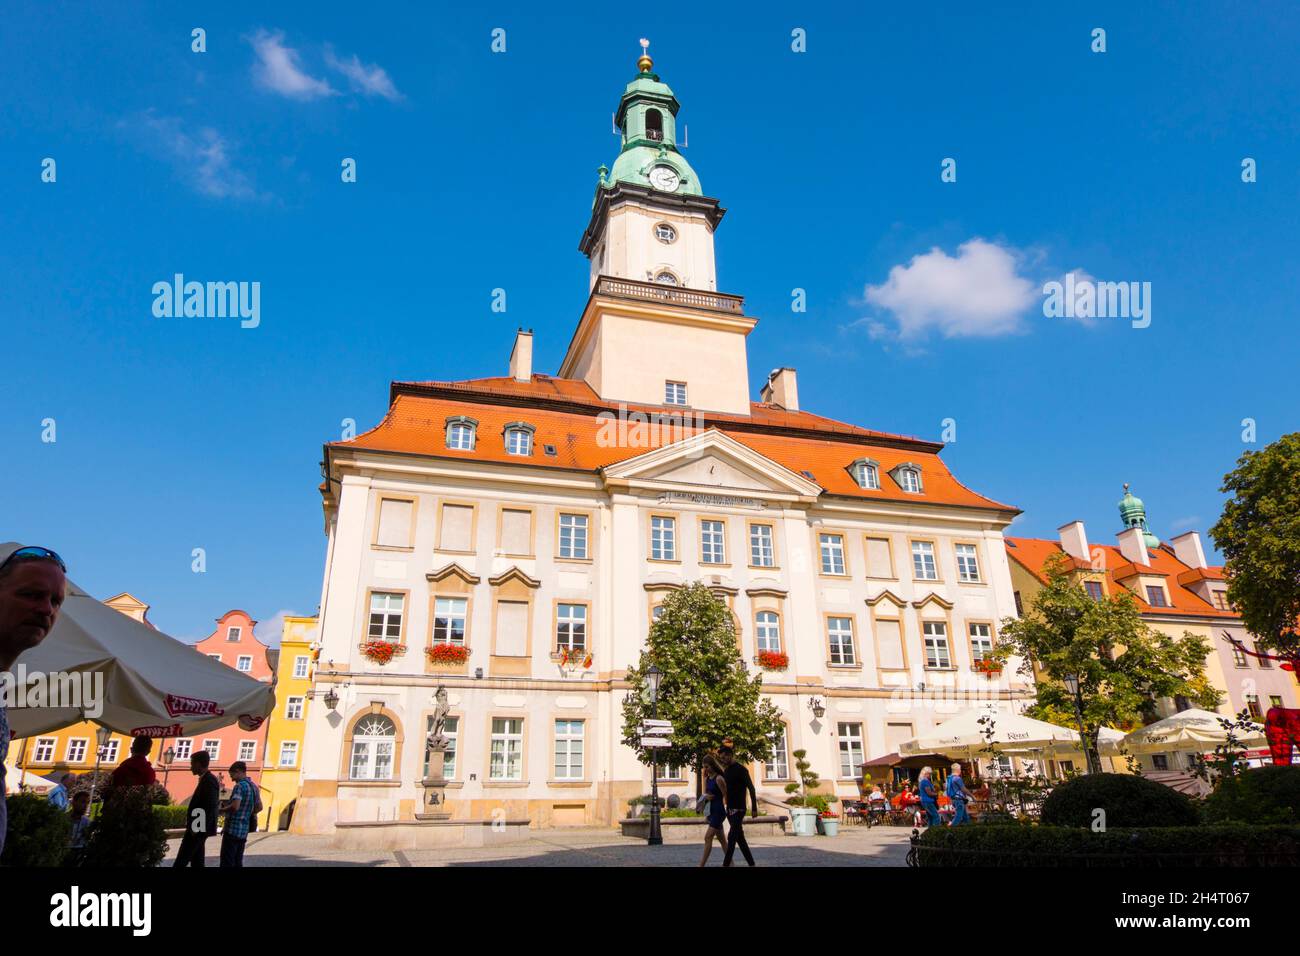 Ratusz W Jeleniej Górze, Rathaus von Jelenia Gora, Rynek Jeleniogórski, Hauptplatz, Jelenia Gora, Polen Stockfoto